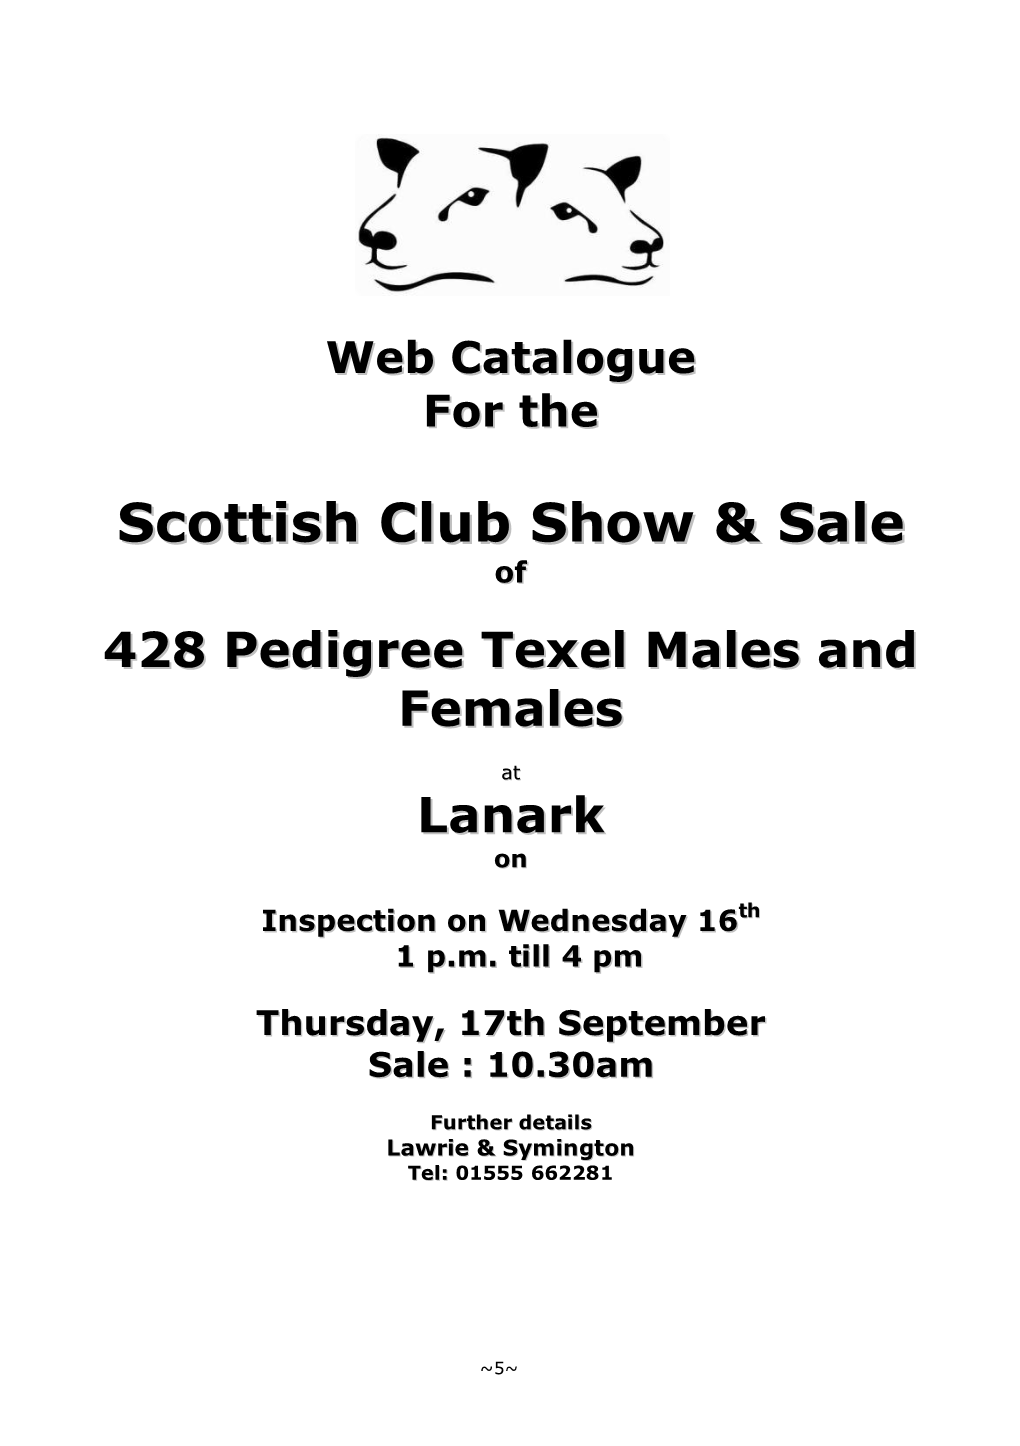 Scottish Club Lanark